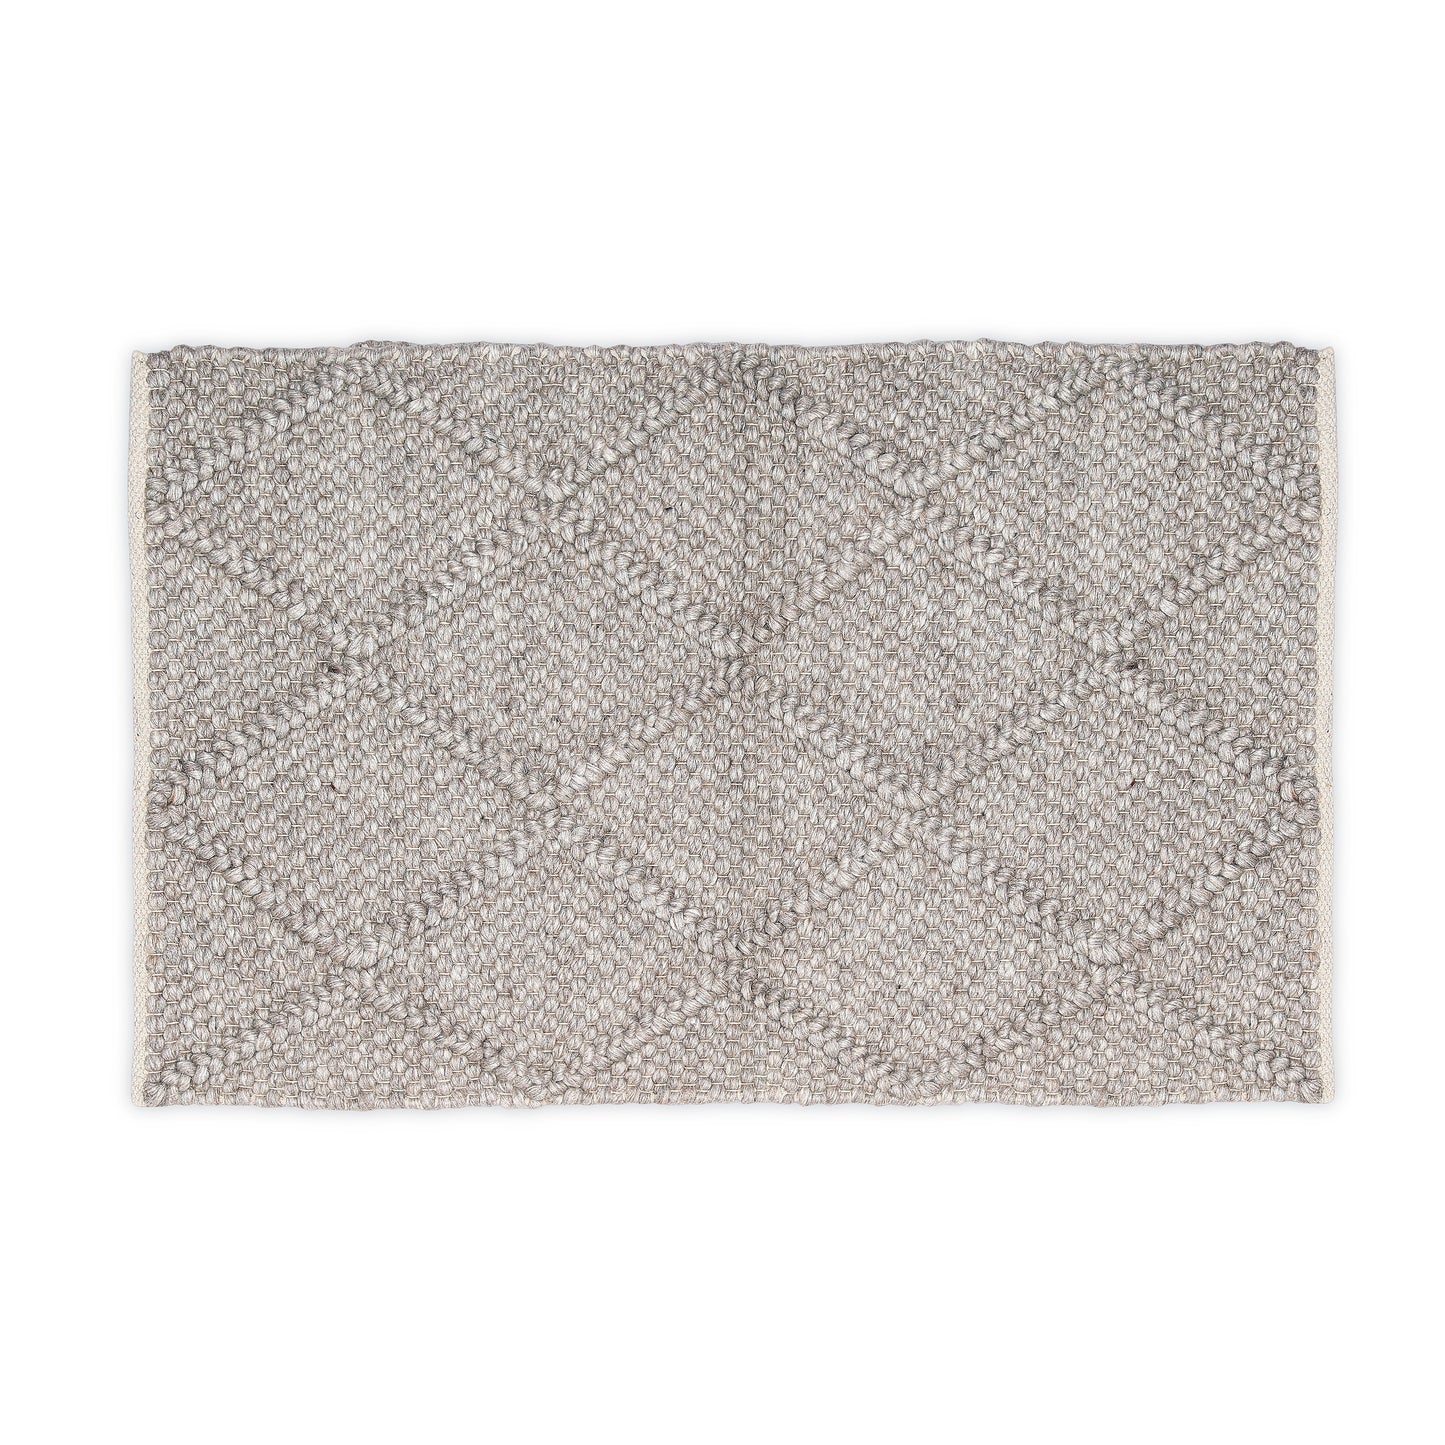 Hand Woven Wool Area Rug Footmat Doormat Woven Brown Long Harlequin 1204